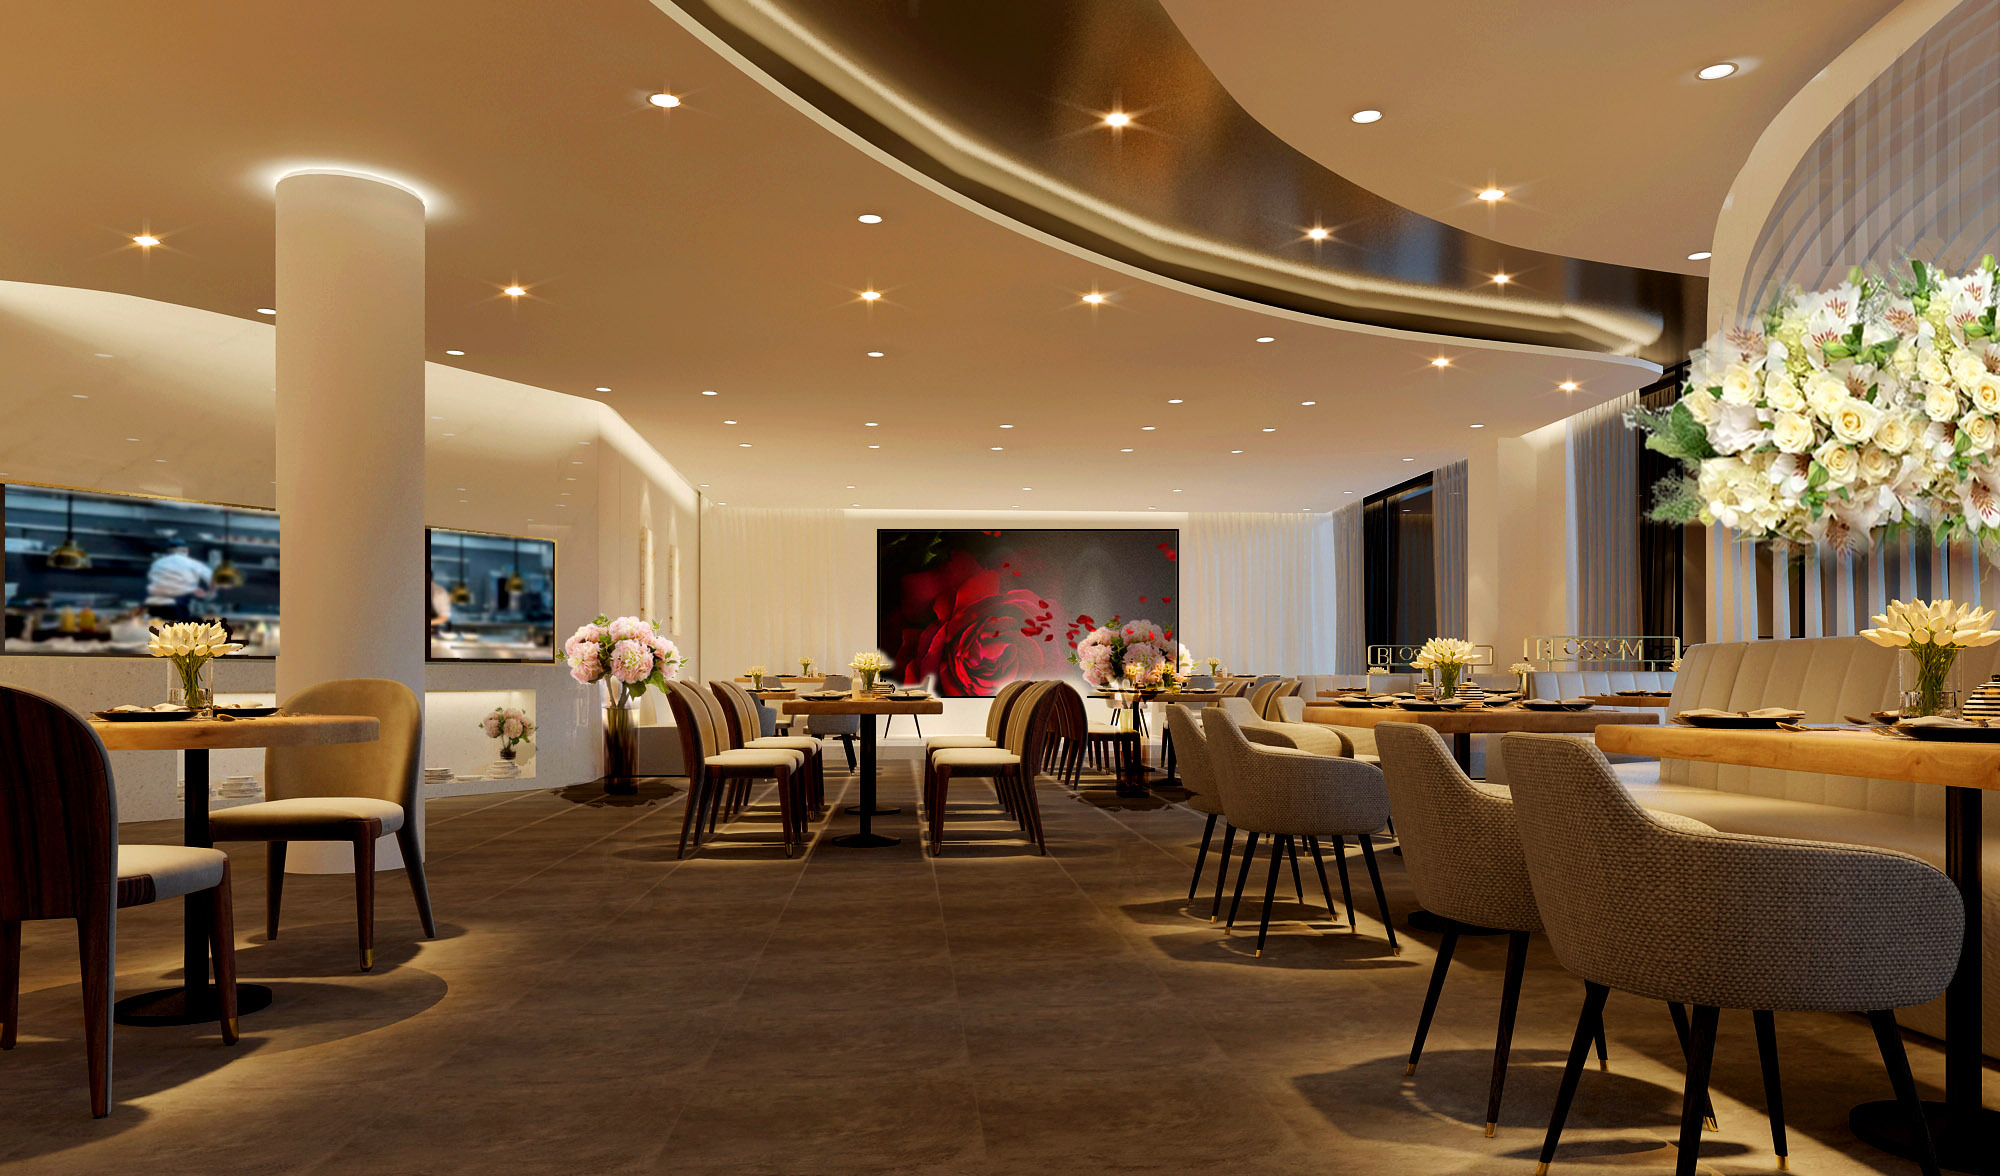 昆山玫瑰园酒店-浙江绿城六和建筑设计有限公司